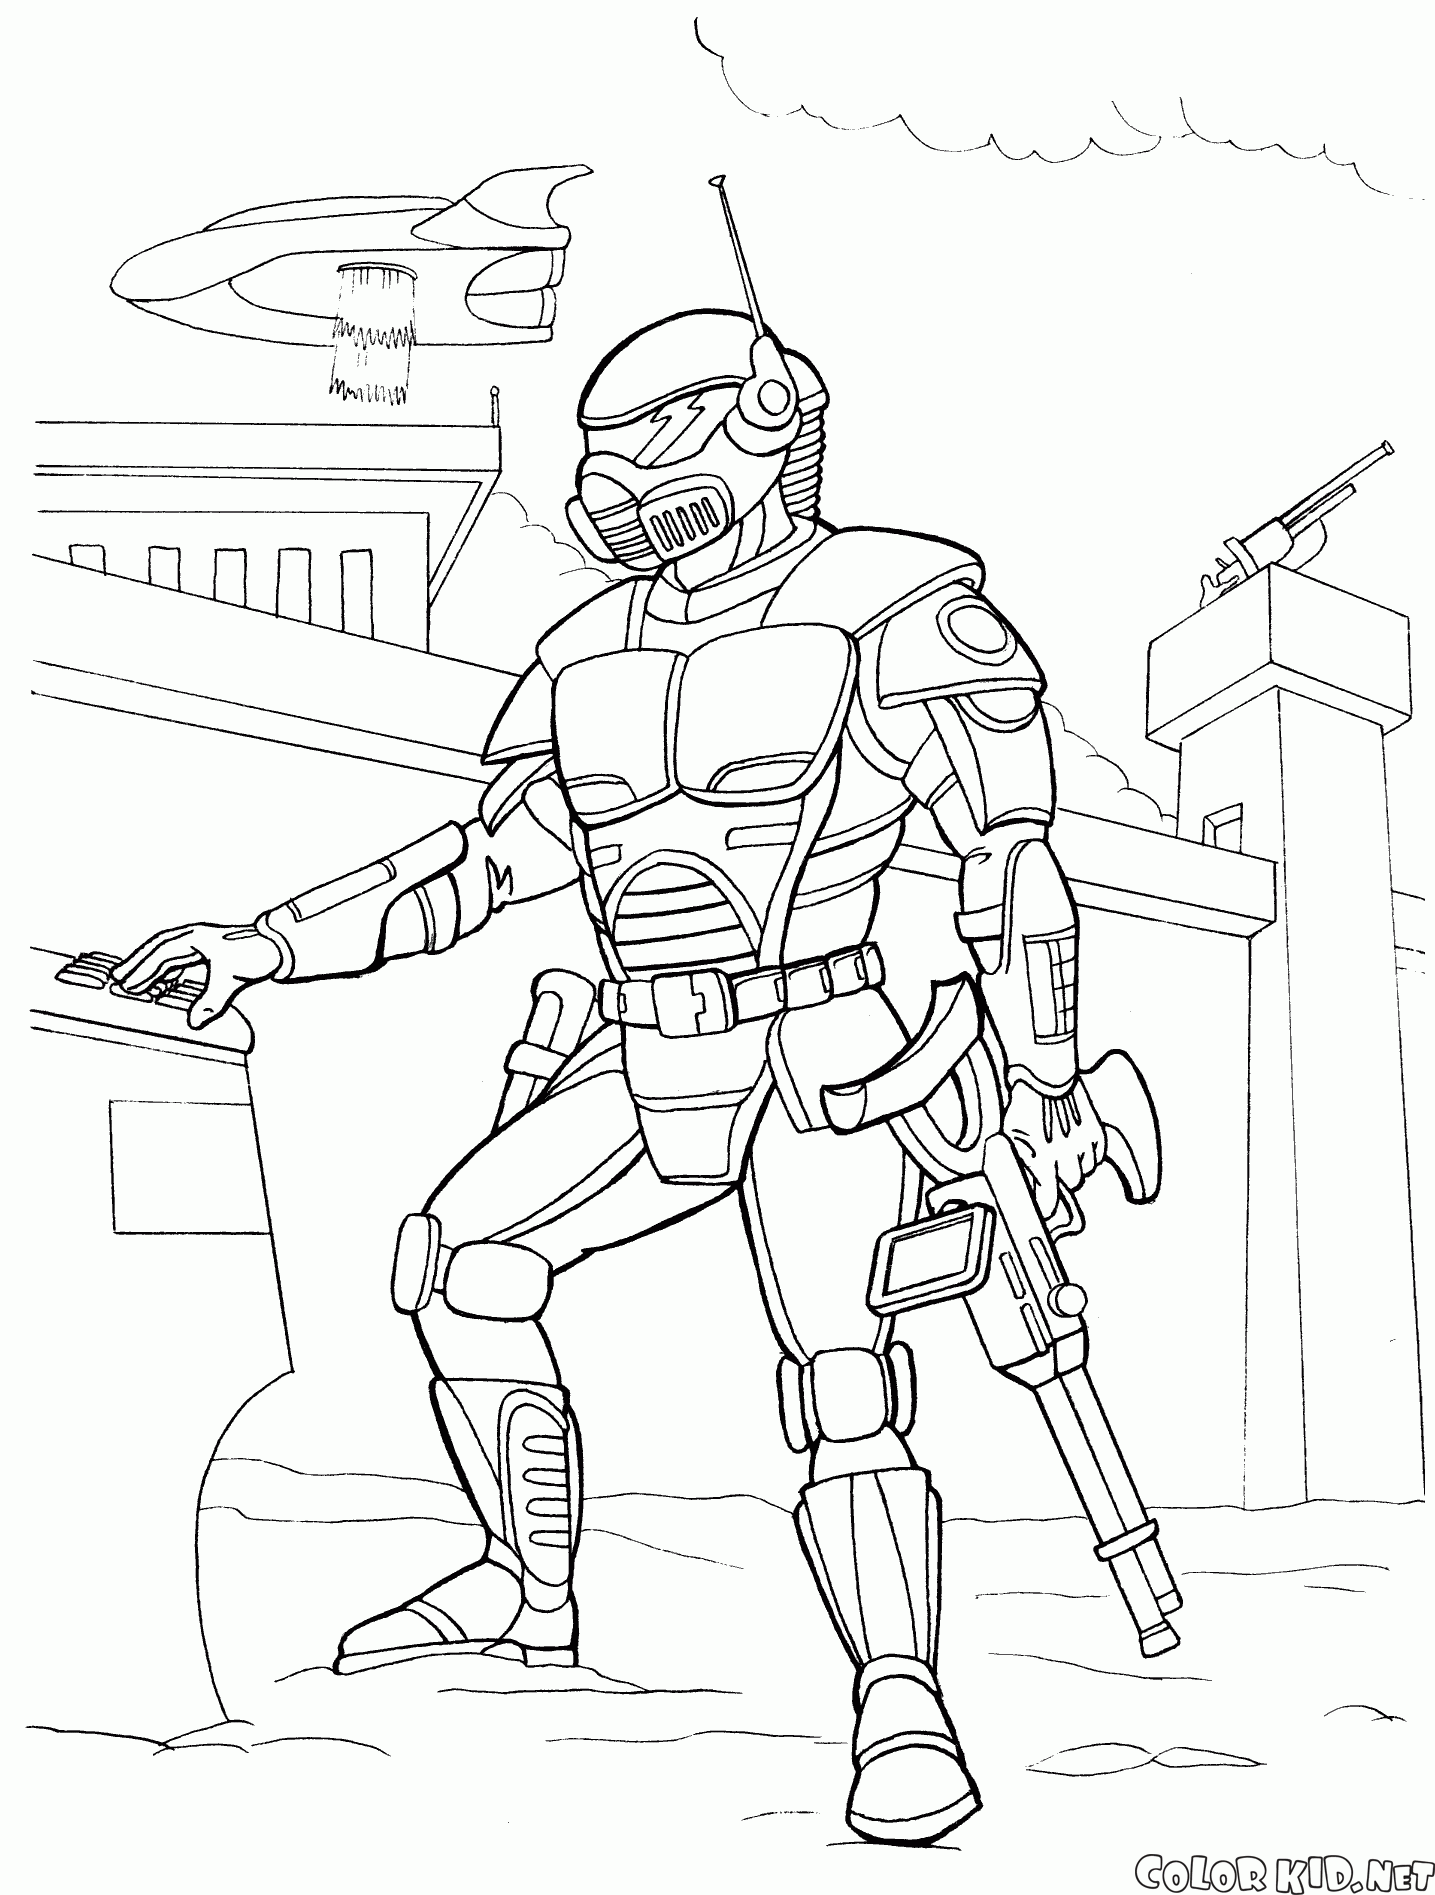 Warrior mercenary